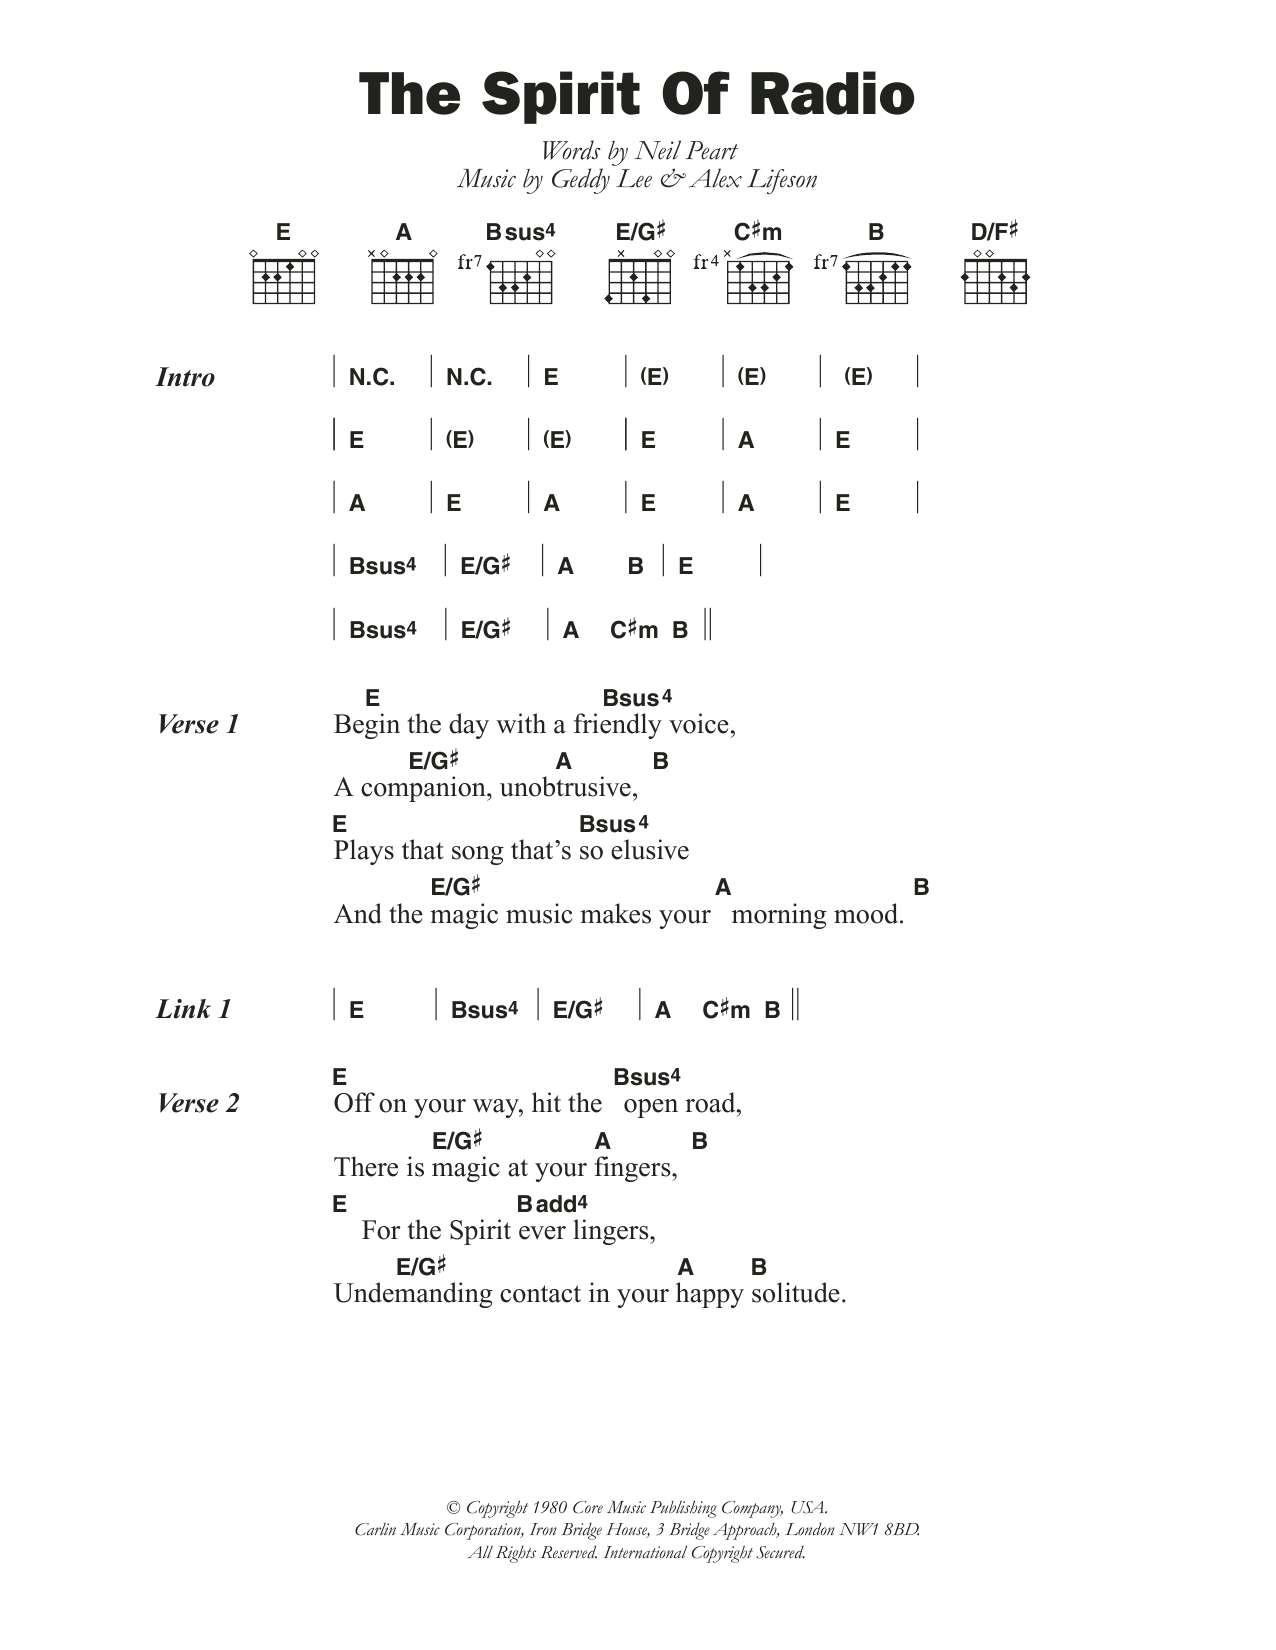 Rush The Spirit Of Radio Sheet Music Notes & Chords for Lyrics & Chords - Download or Print PDF